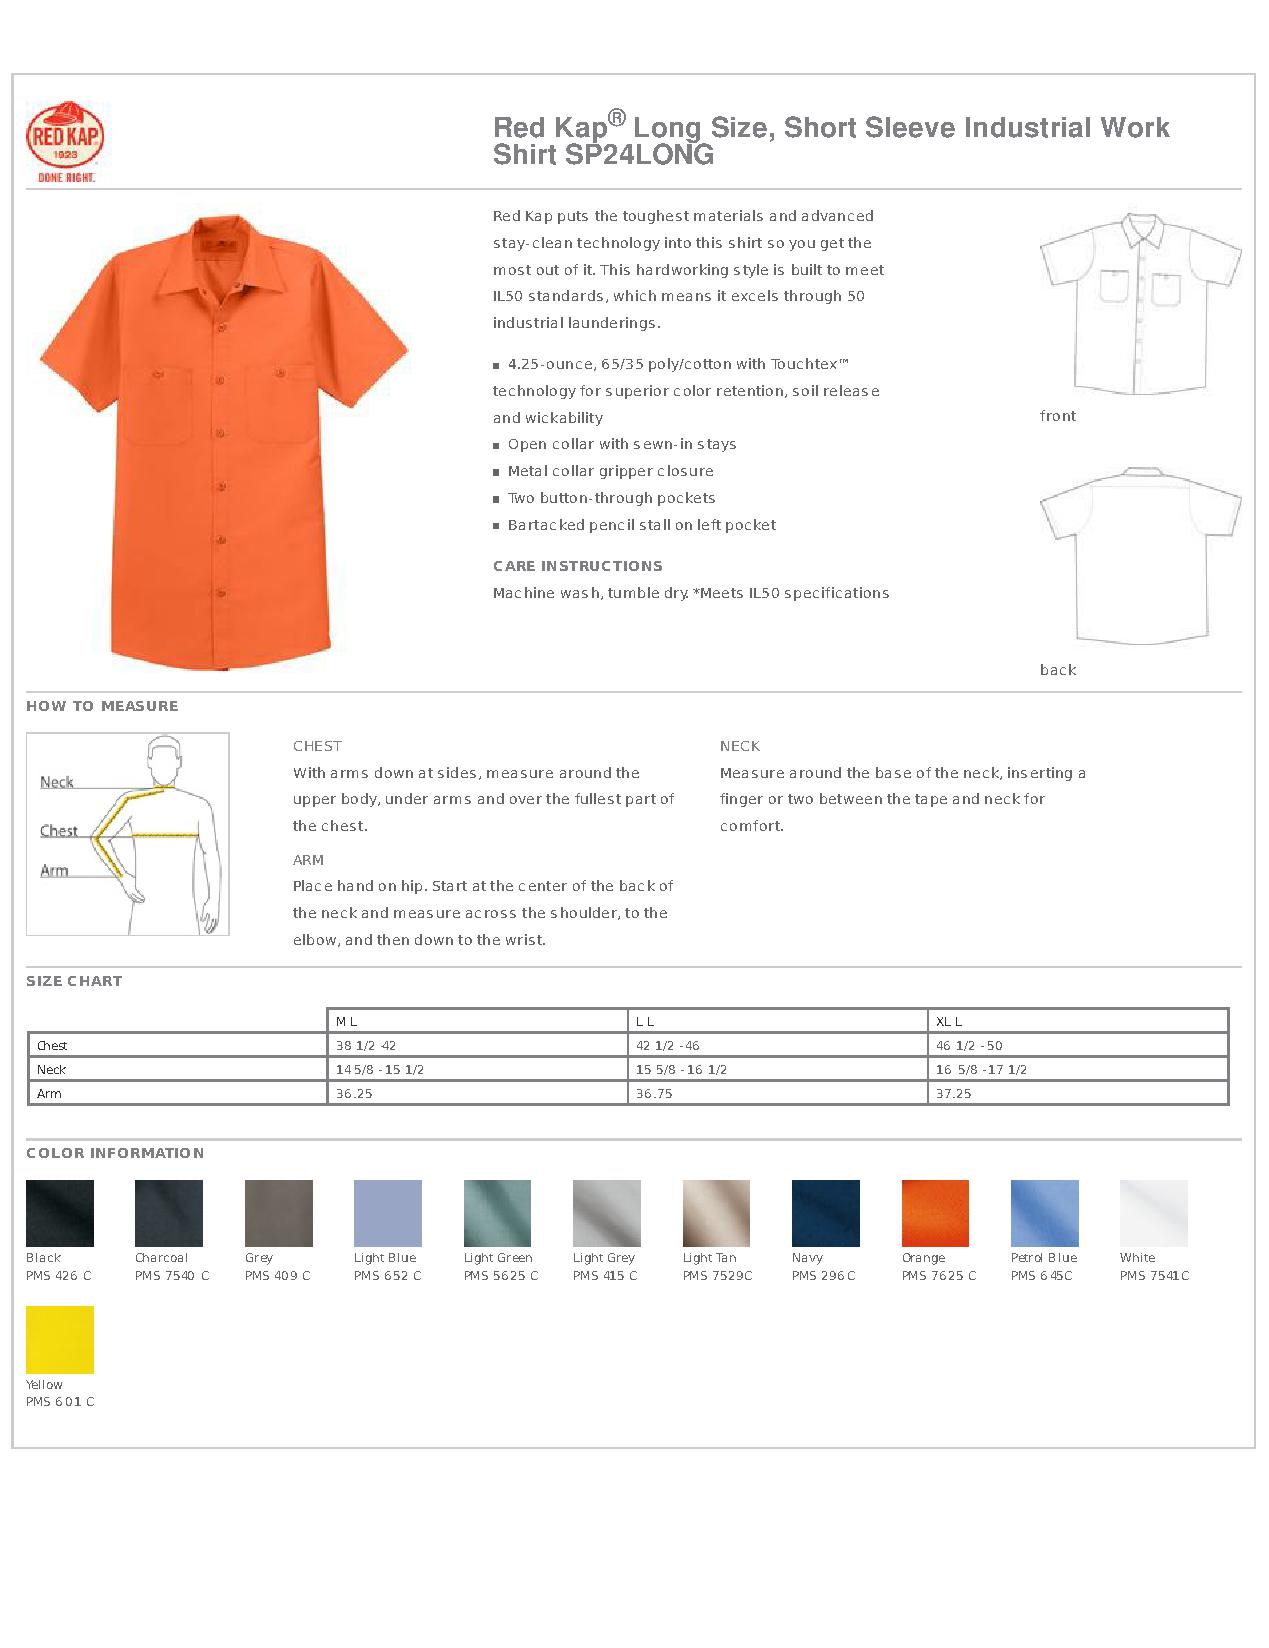 Red Kap Shirt Size Chart